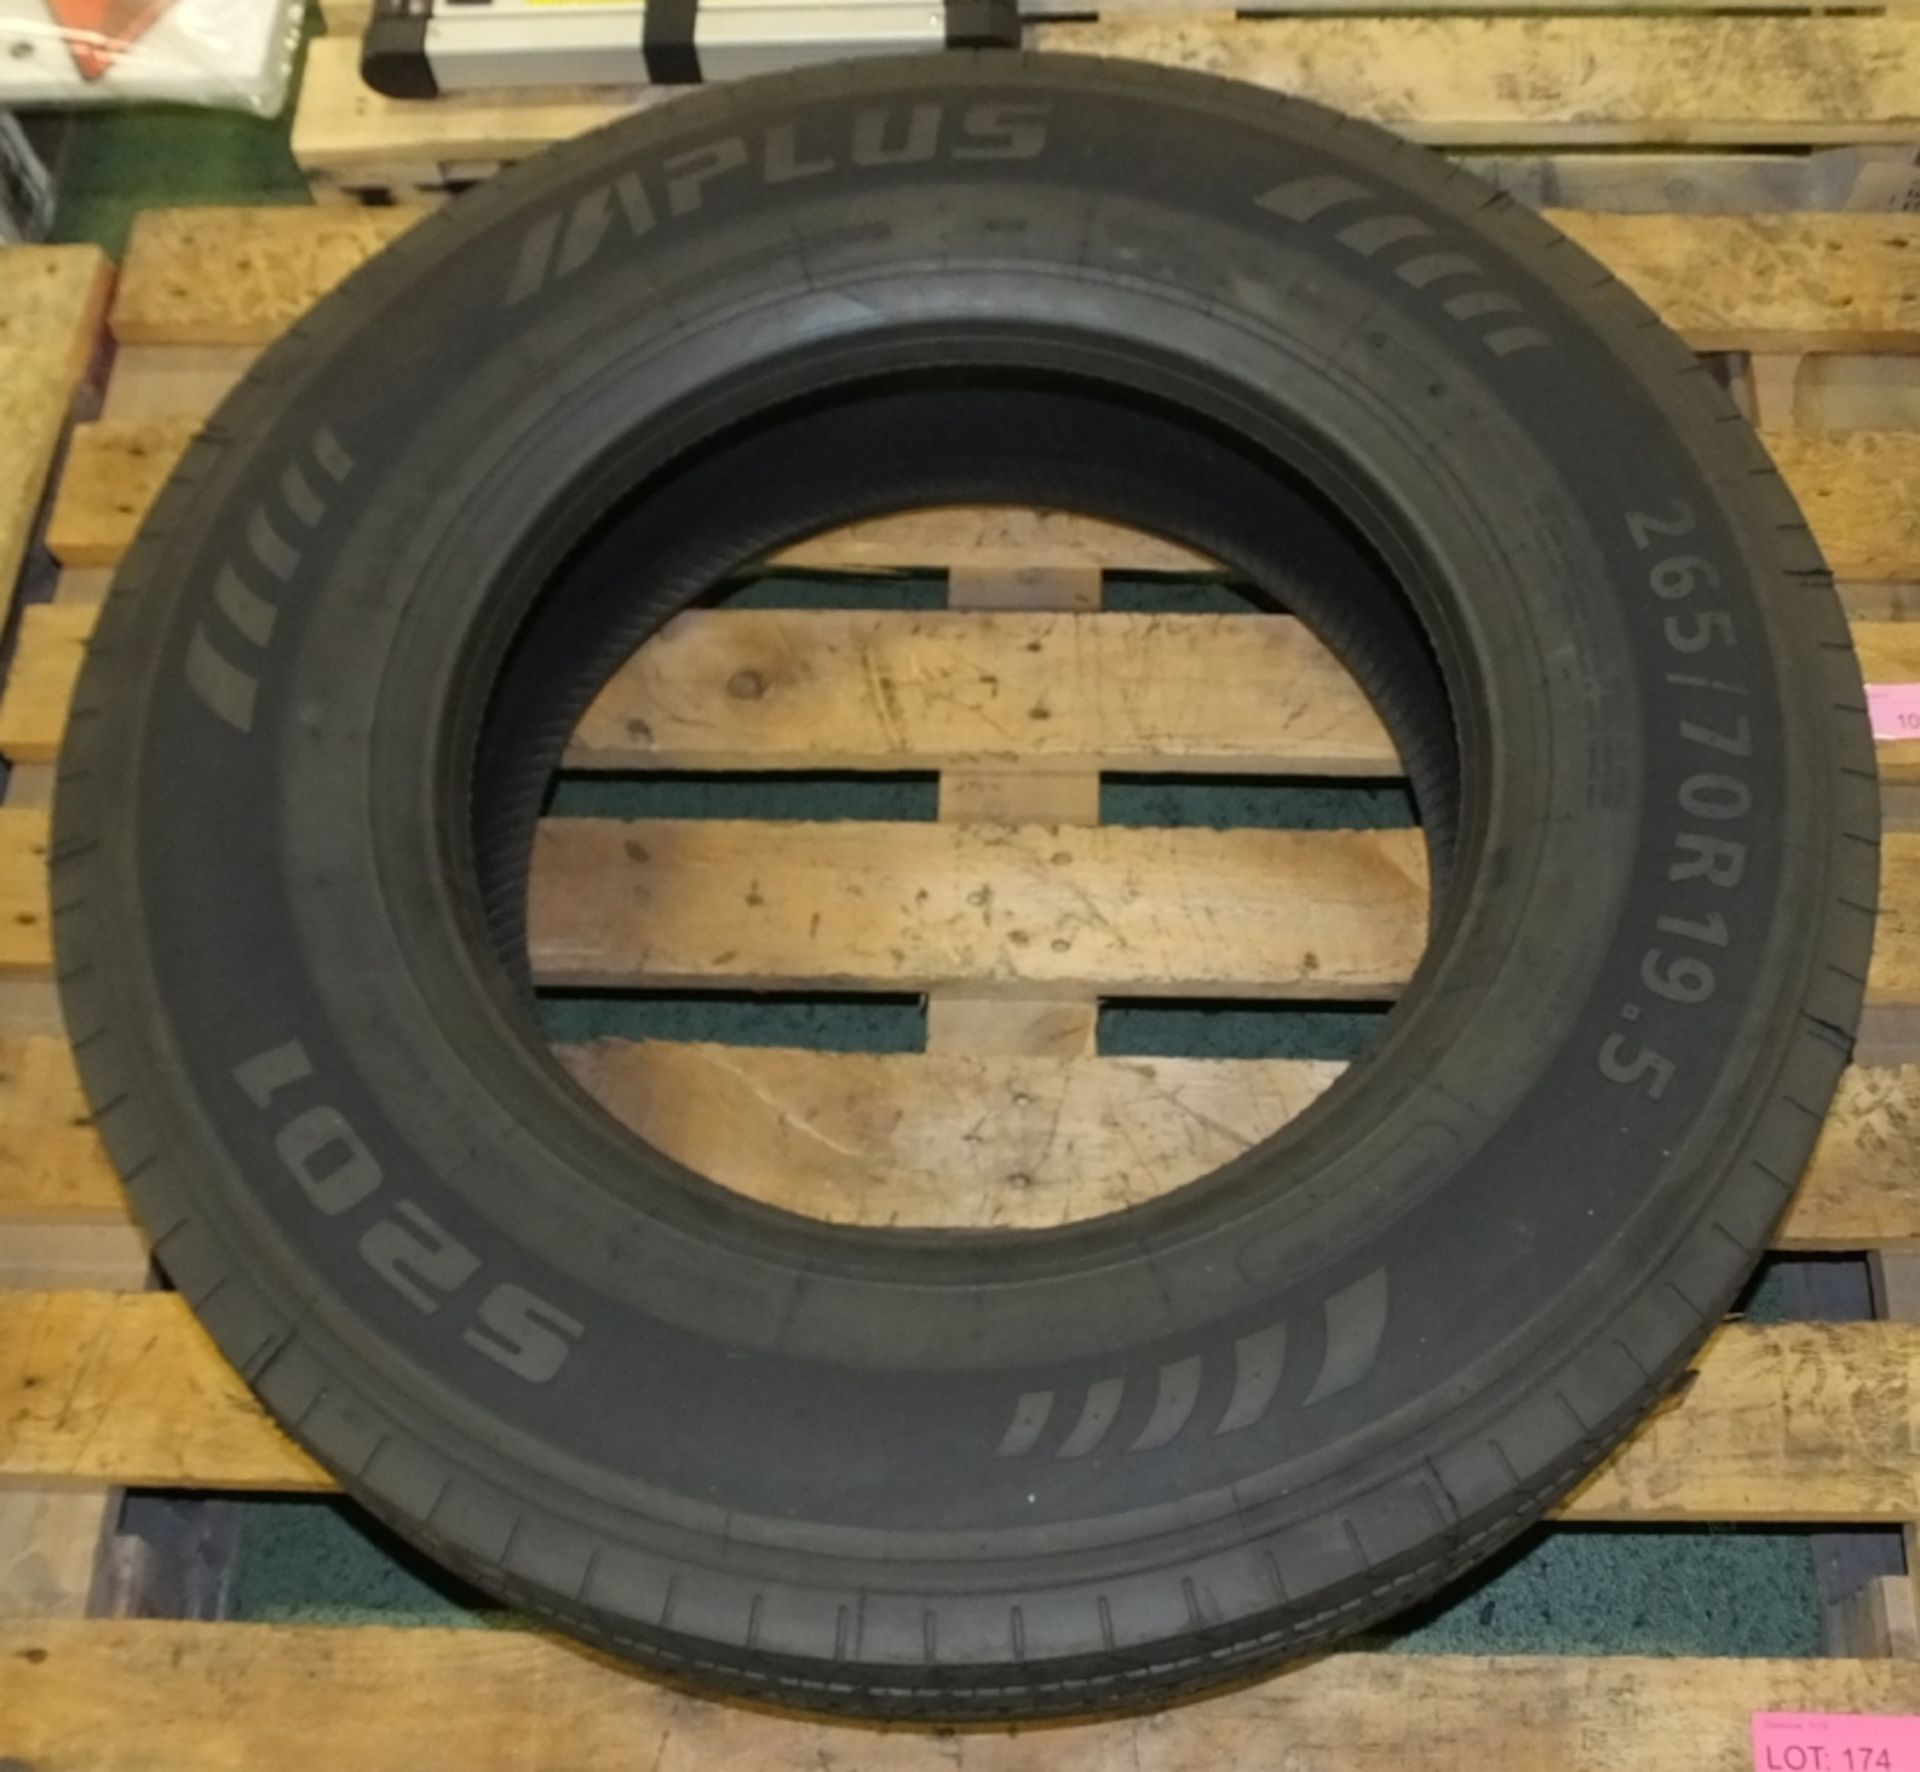 Alplus 265 / 70R 19.5 S201 tyre (new & unused)